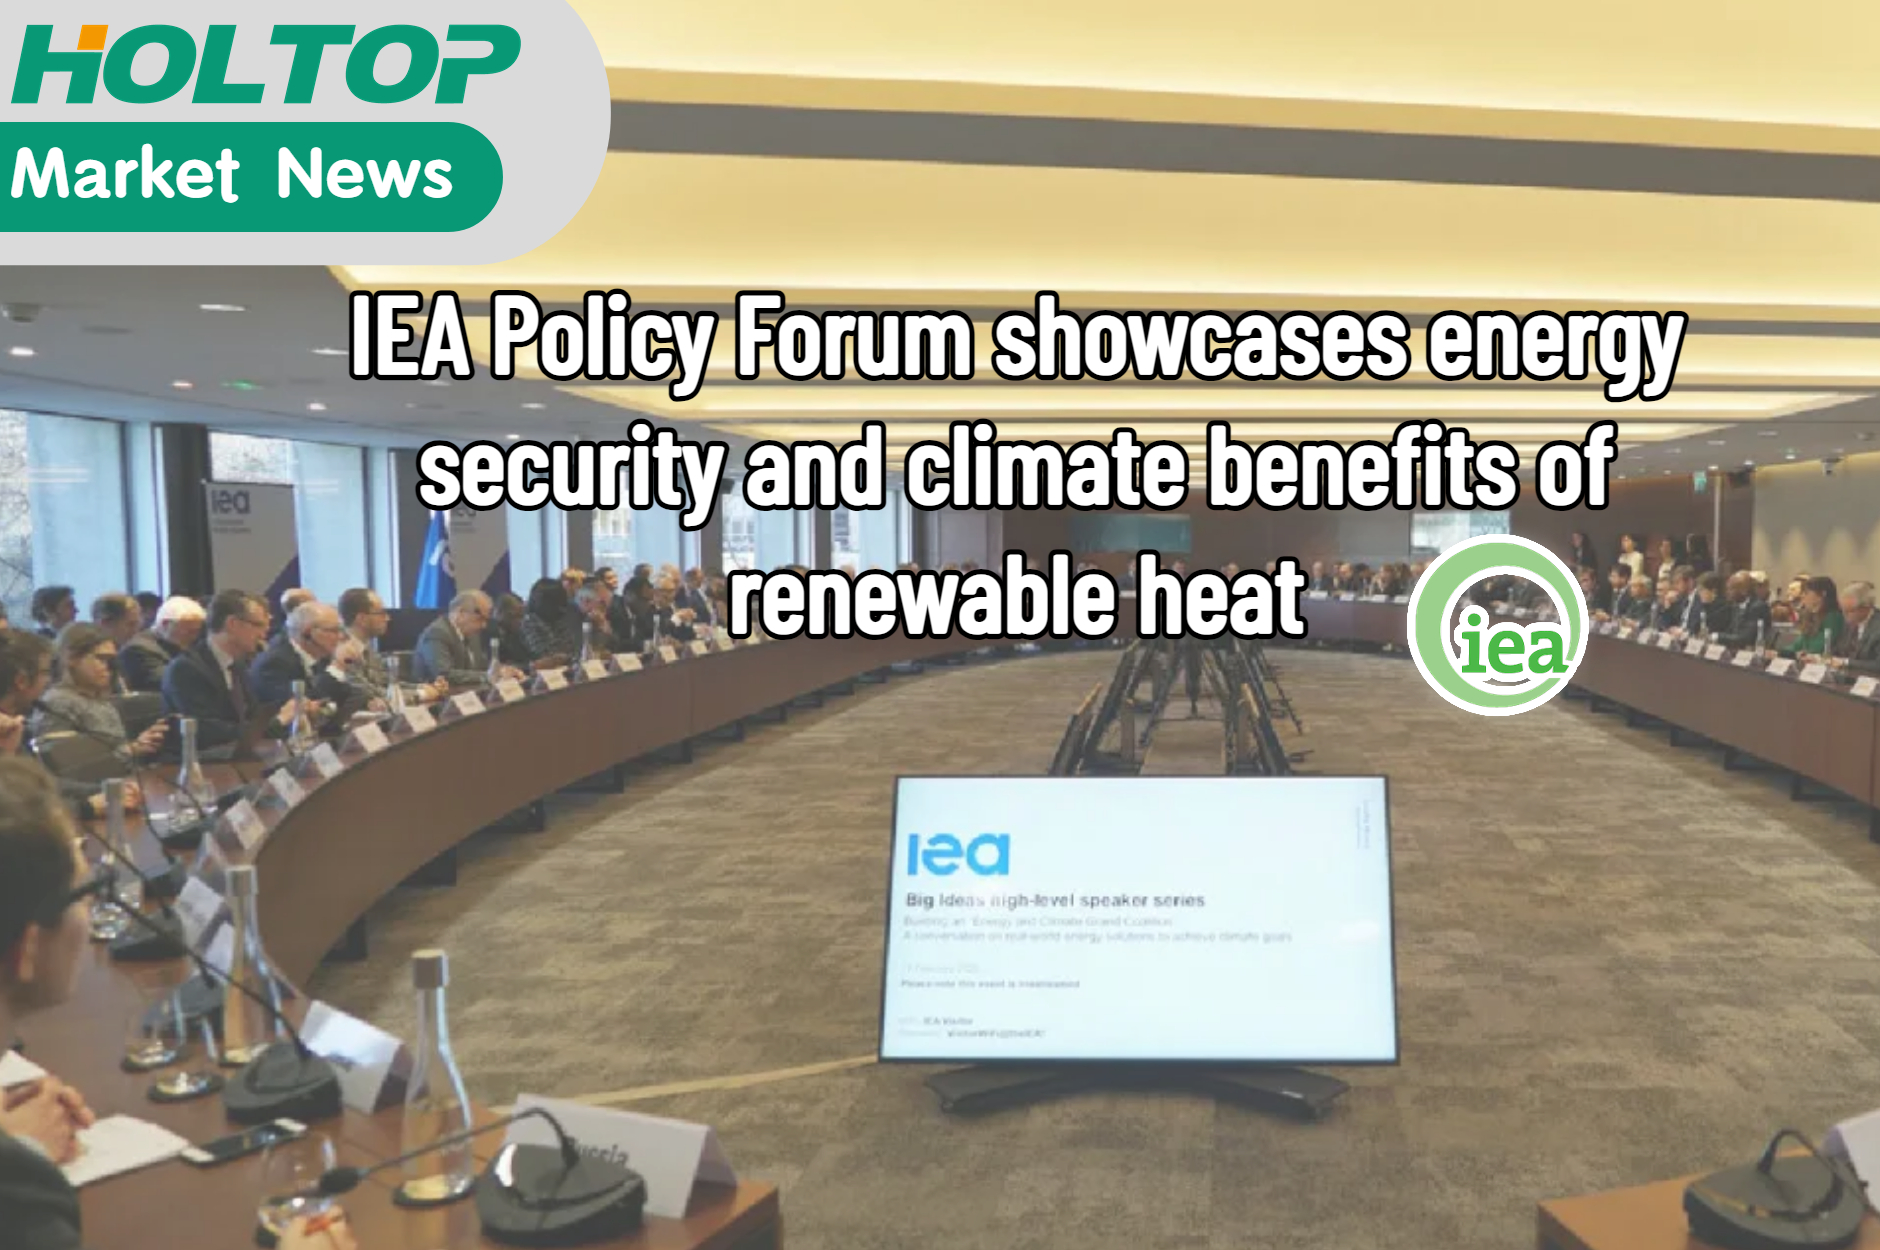 El Foro de políticas de la IEA muestra la seguridad energética y los beneficios climáticos del calor renovable